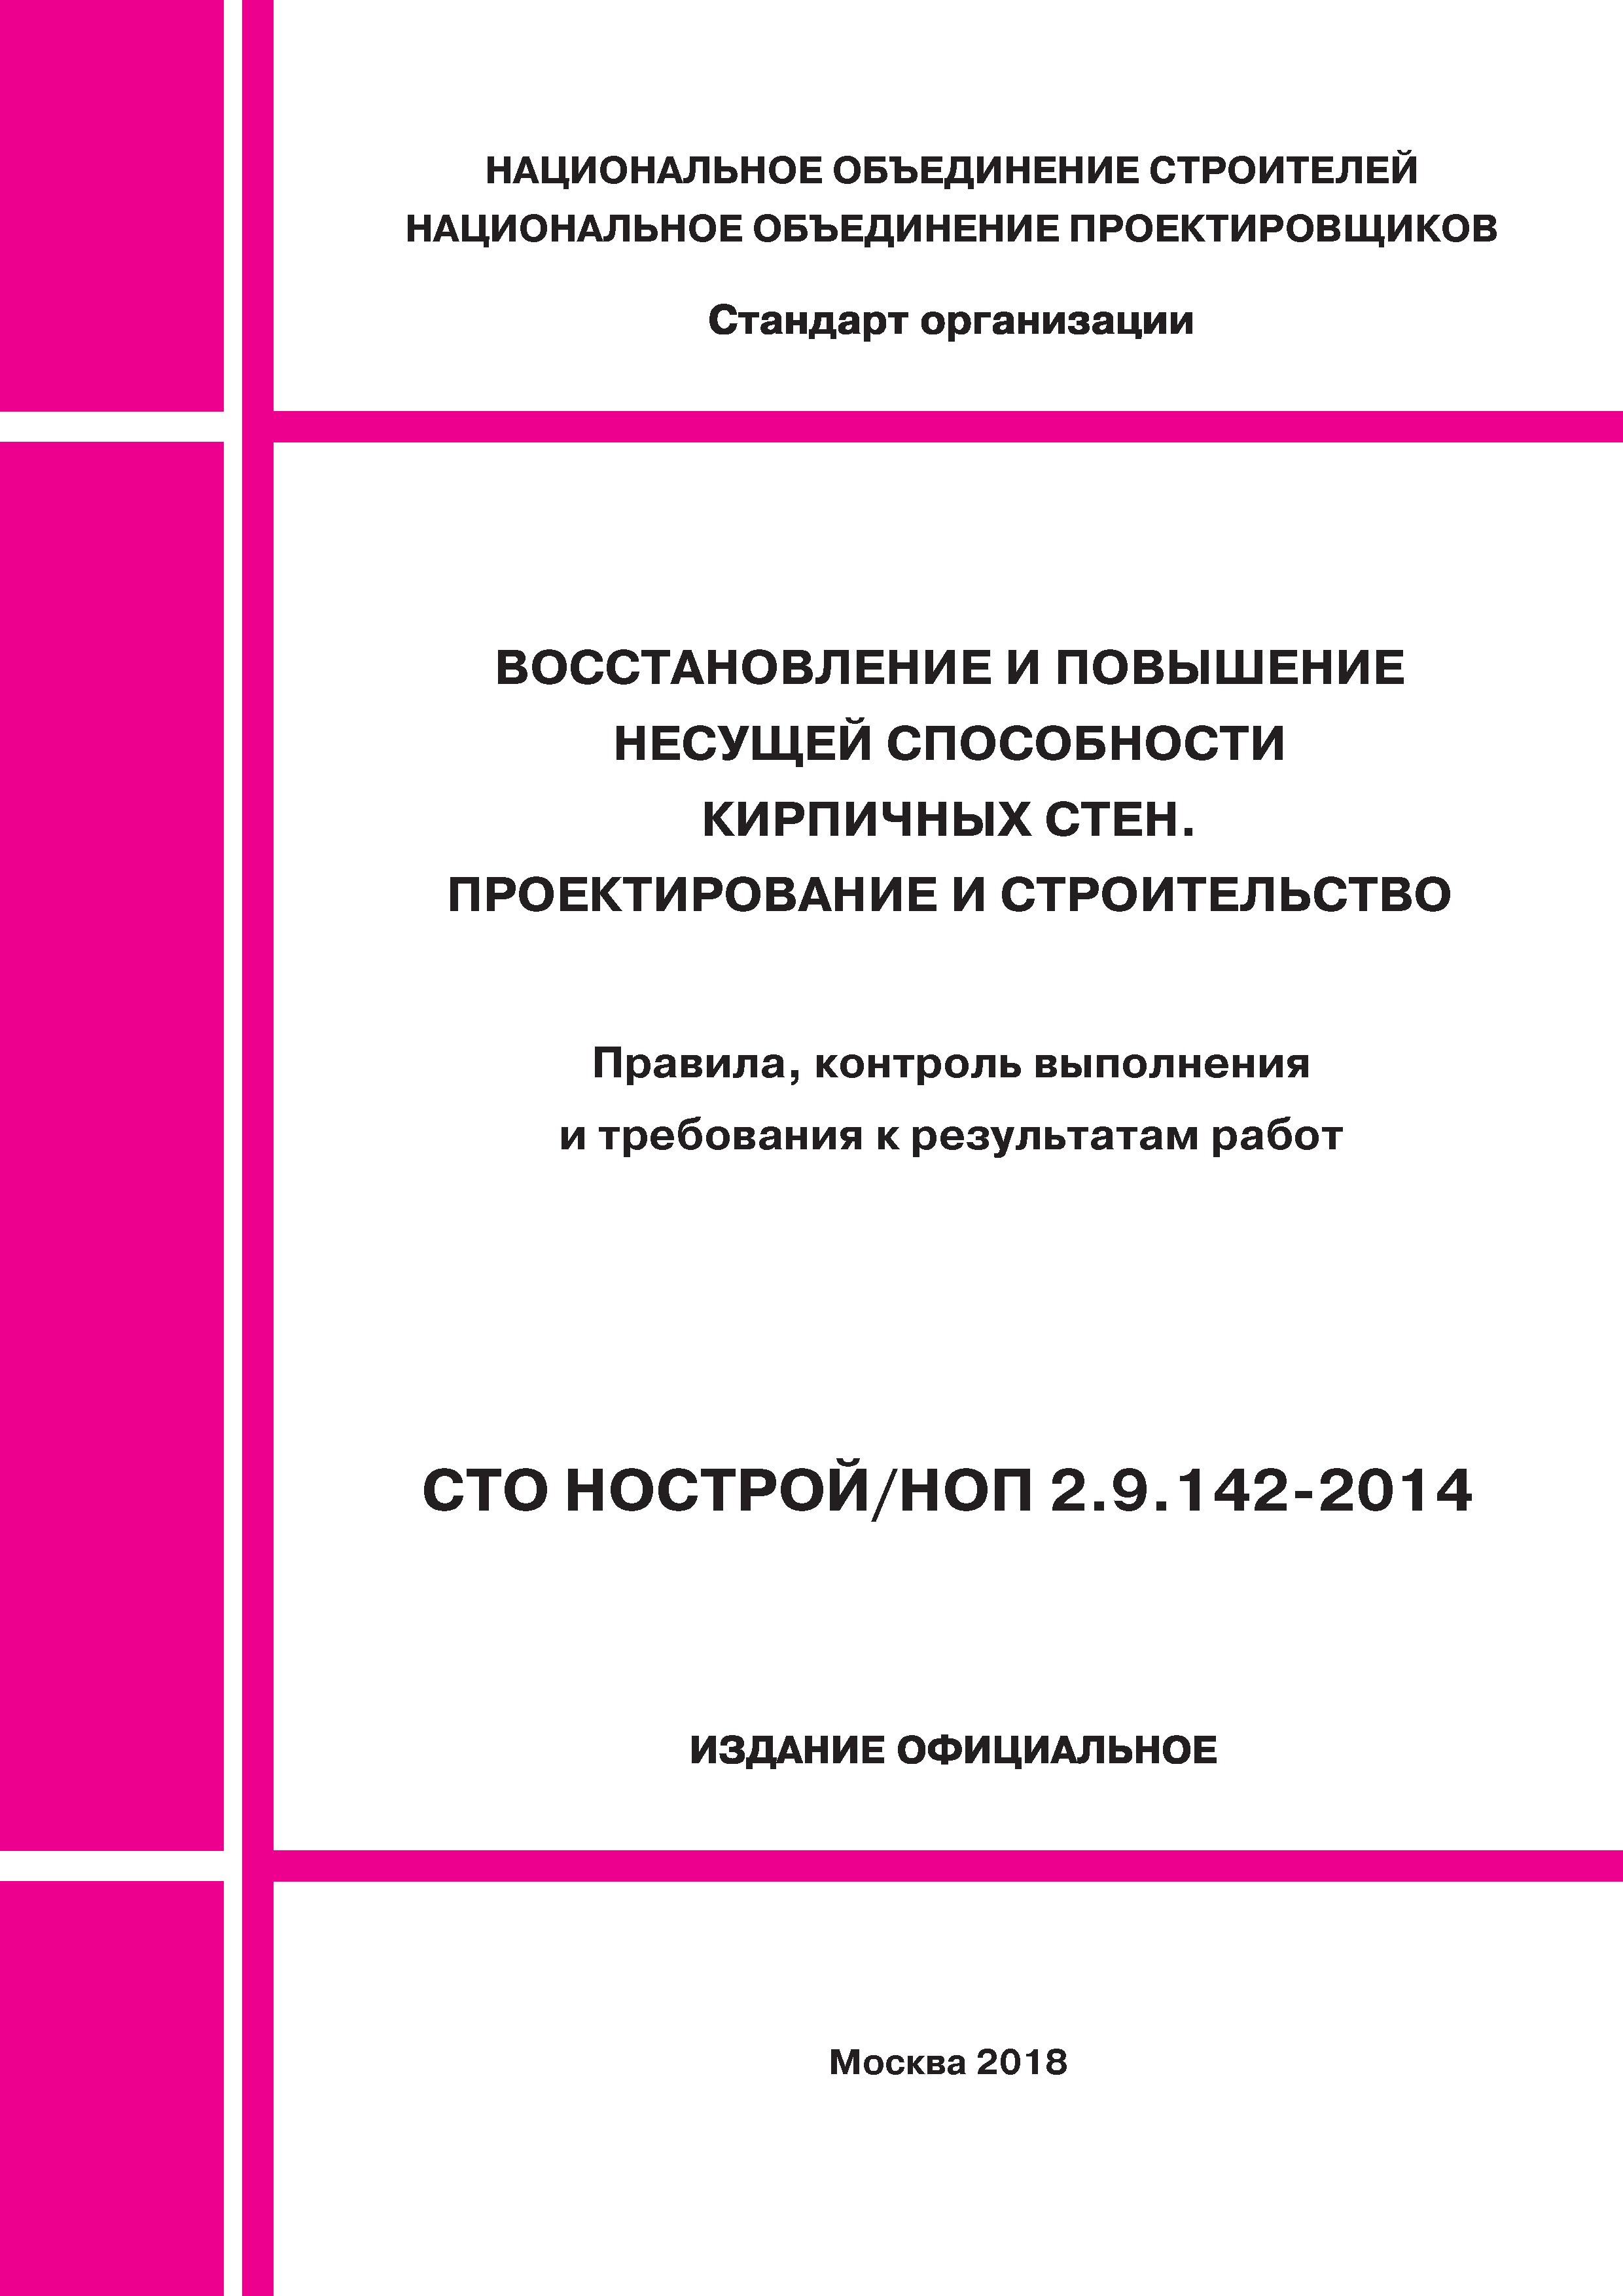 СТО НОСТРОЙ/НОП 2.9.142-2014